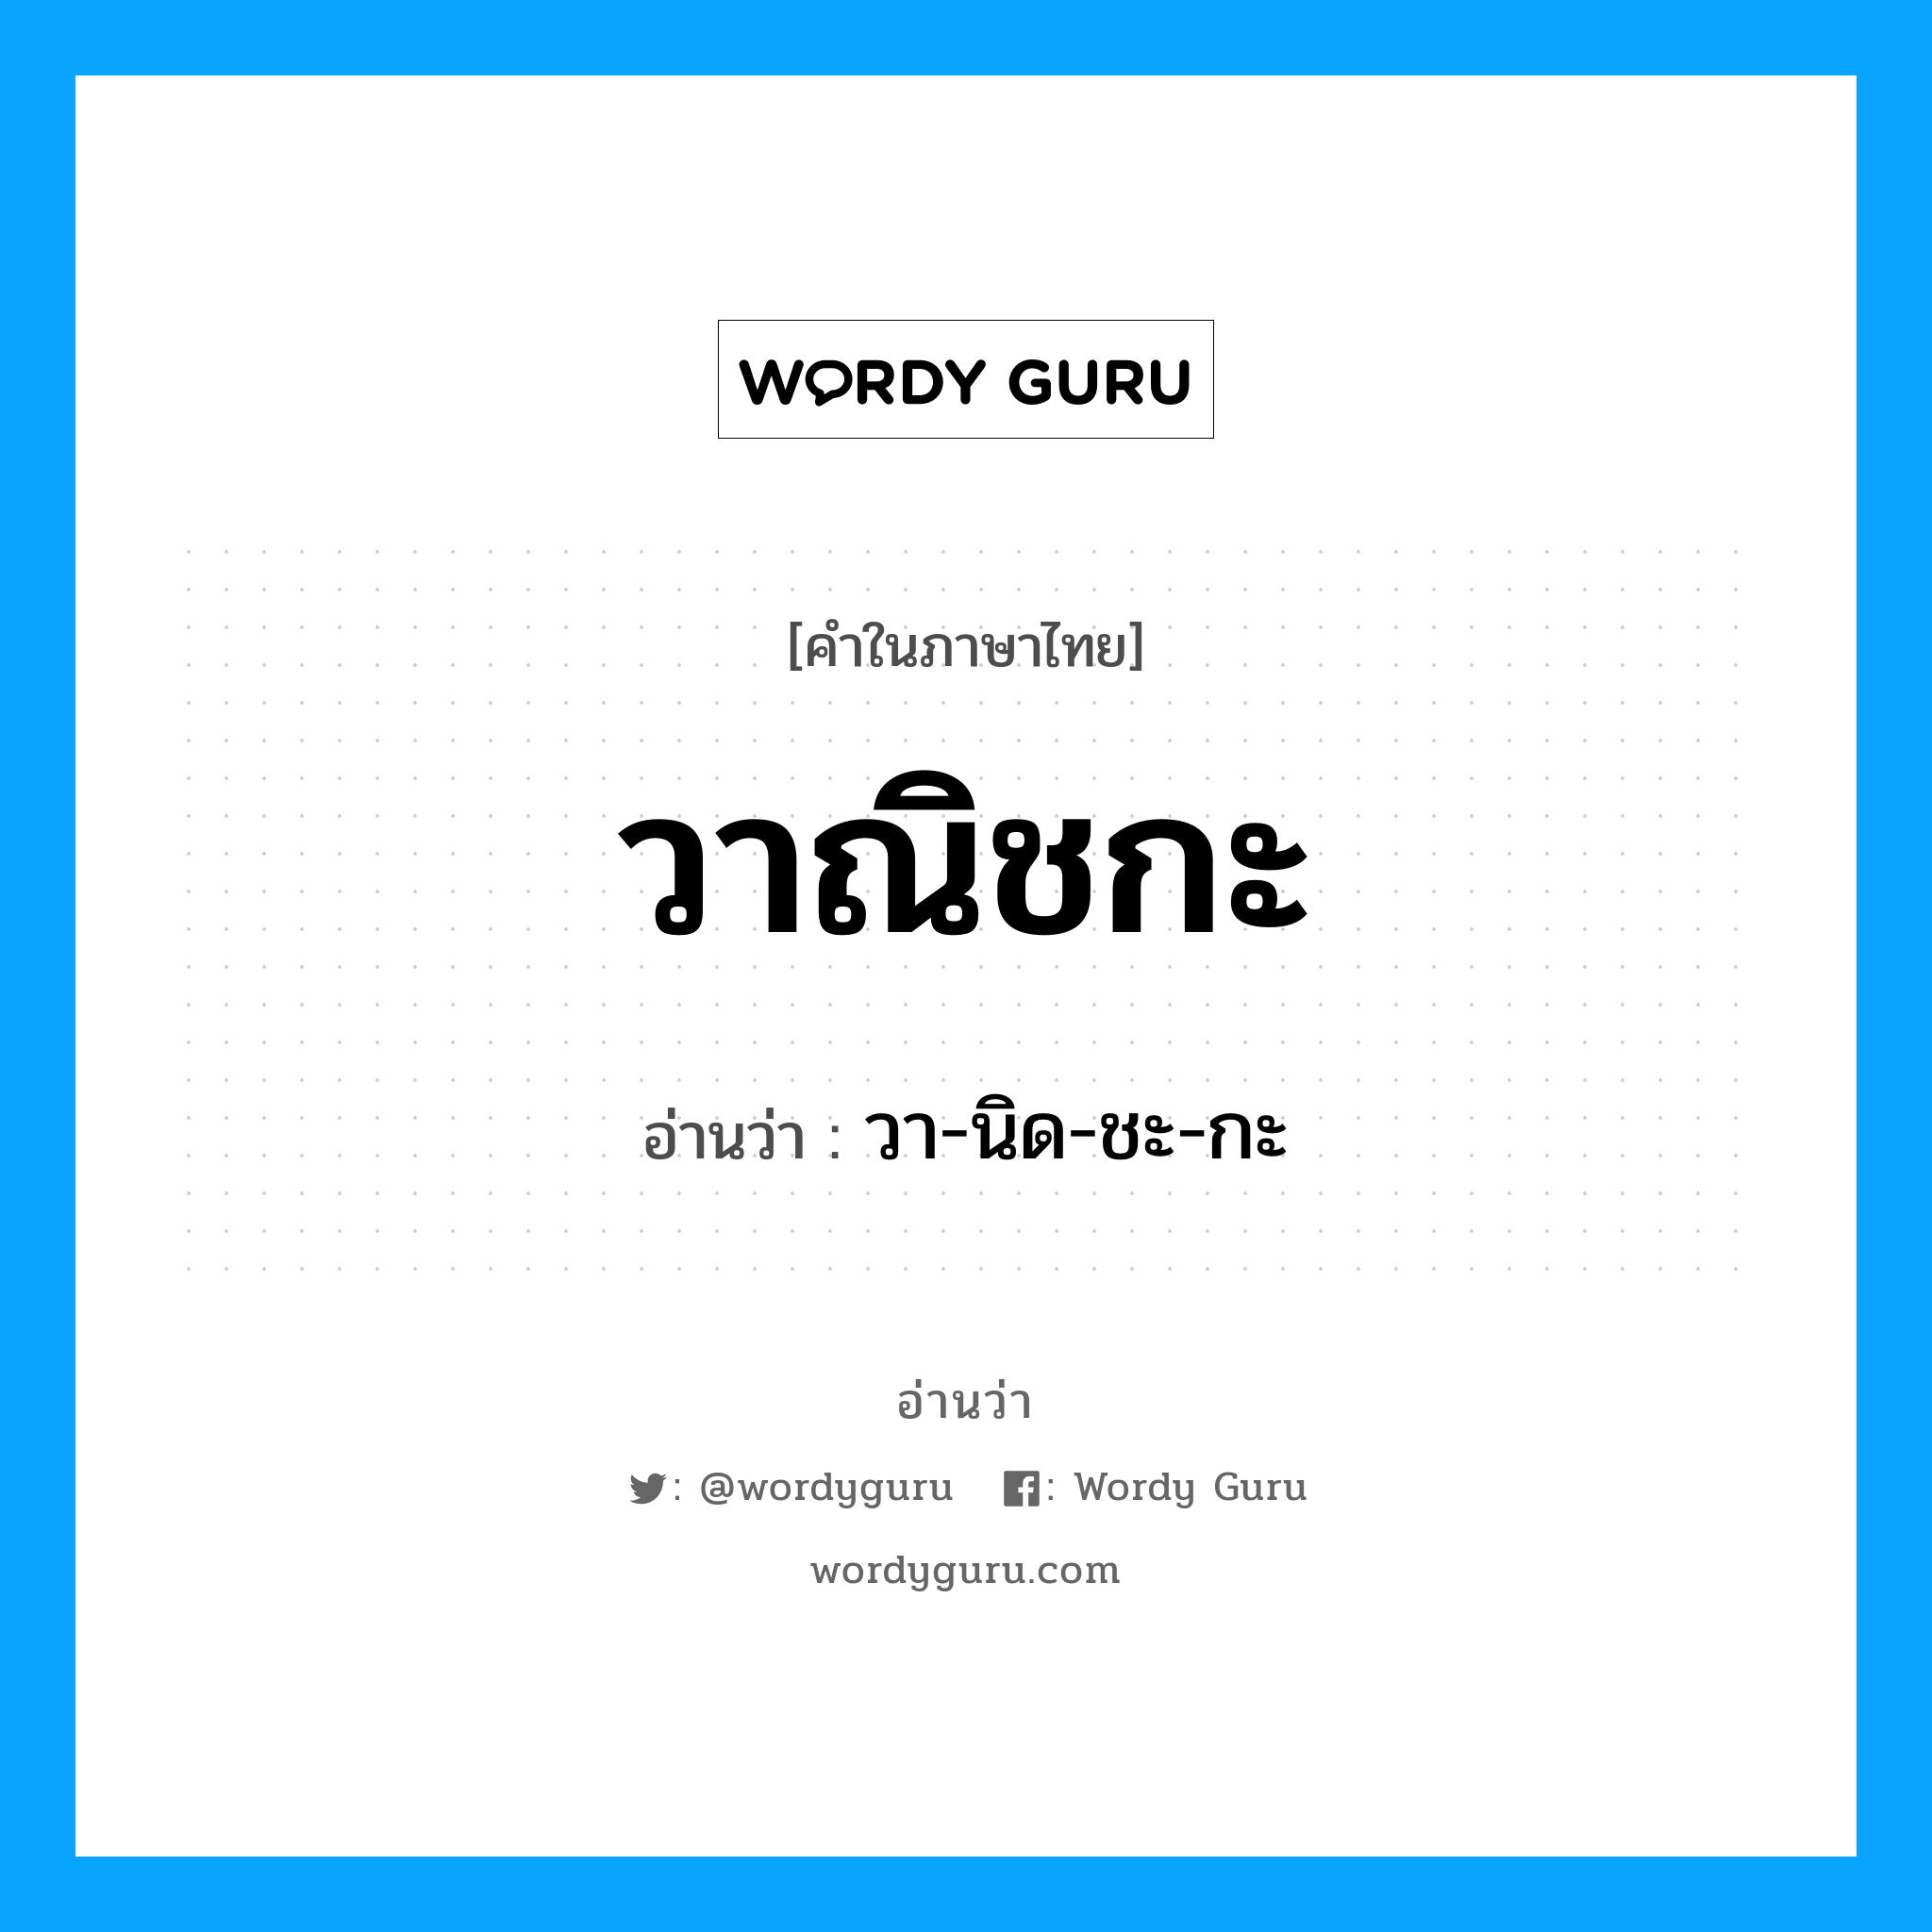 วา-นิด-ชะ-กะ เป็นคำอ่านของคำไหน?, คำในภาษาไทย วา-นิด-ชะ-กะ อ่านว่า วาณิชกะ